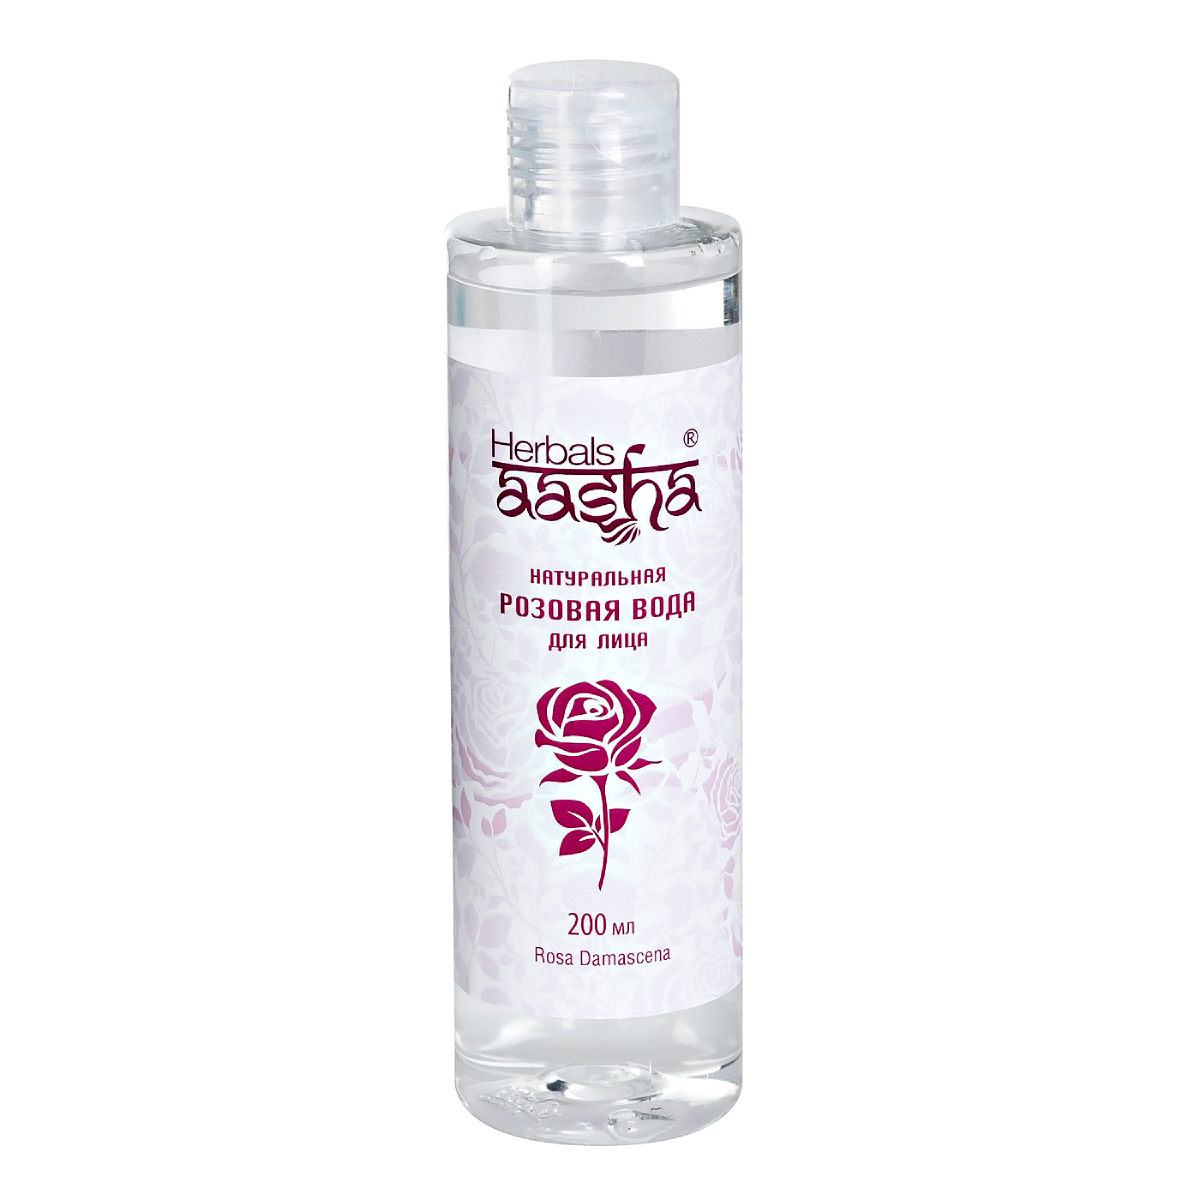 Натуральная розовая вода Aasha Herbals для лица, 200 мл